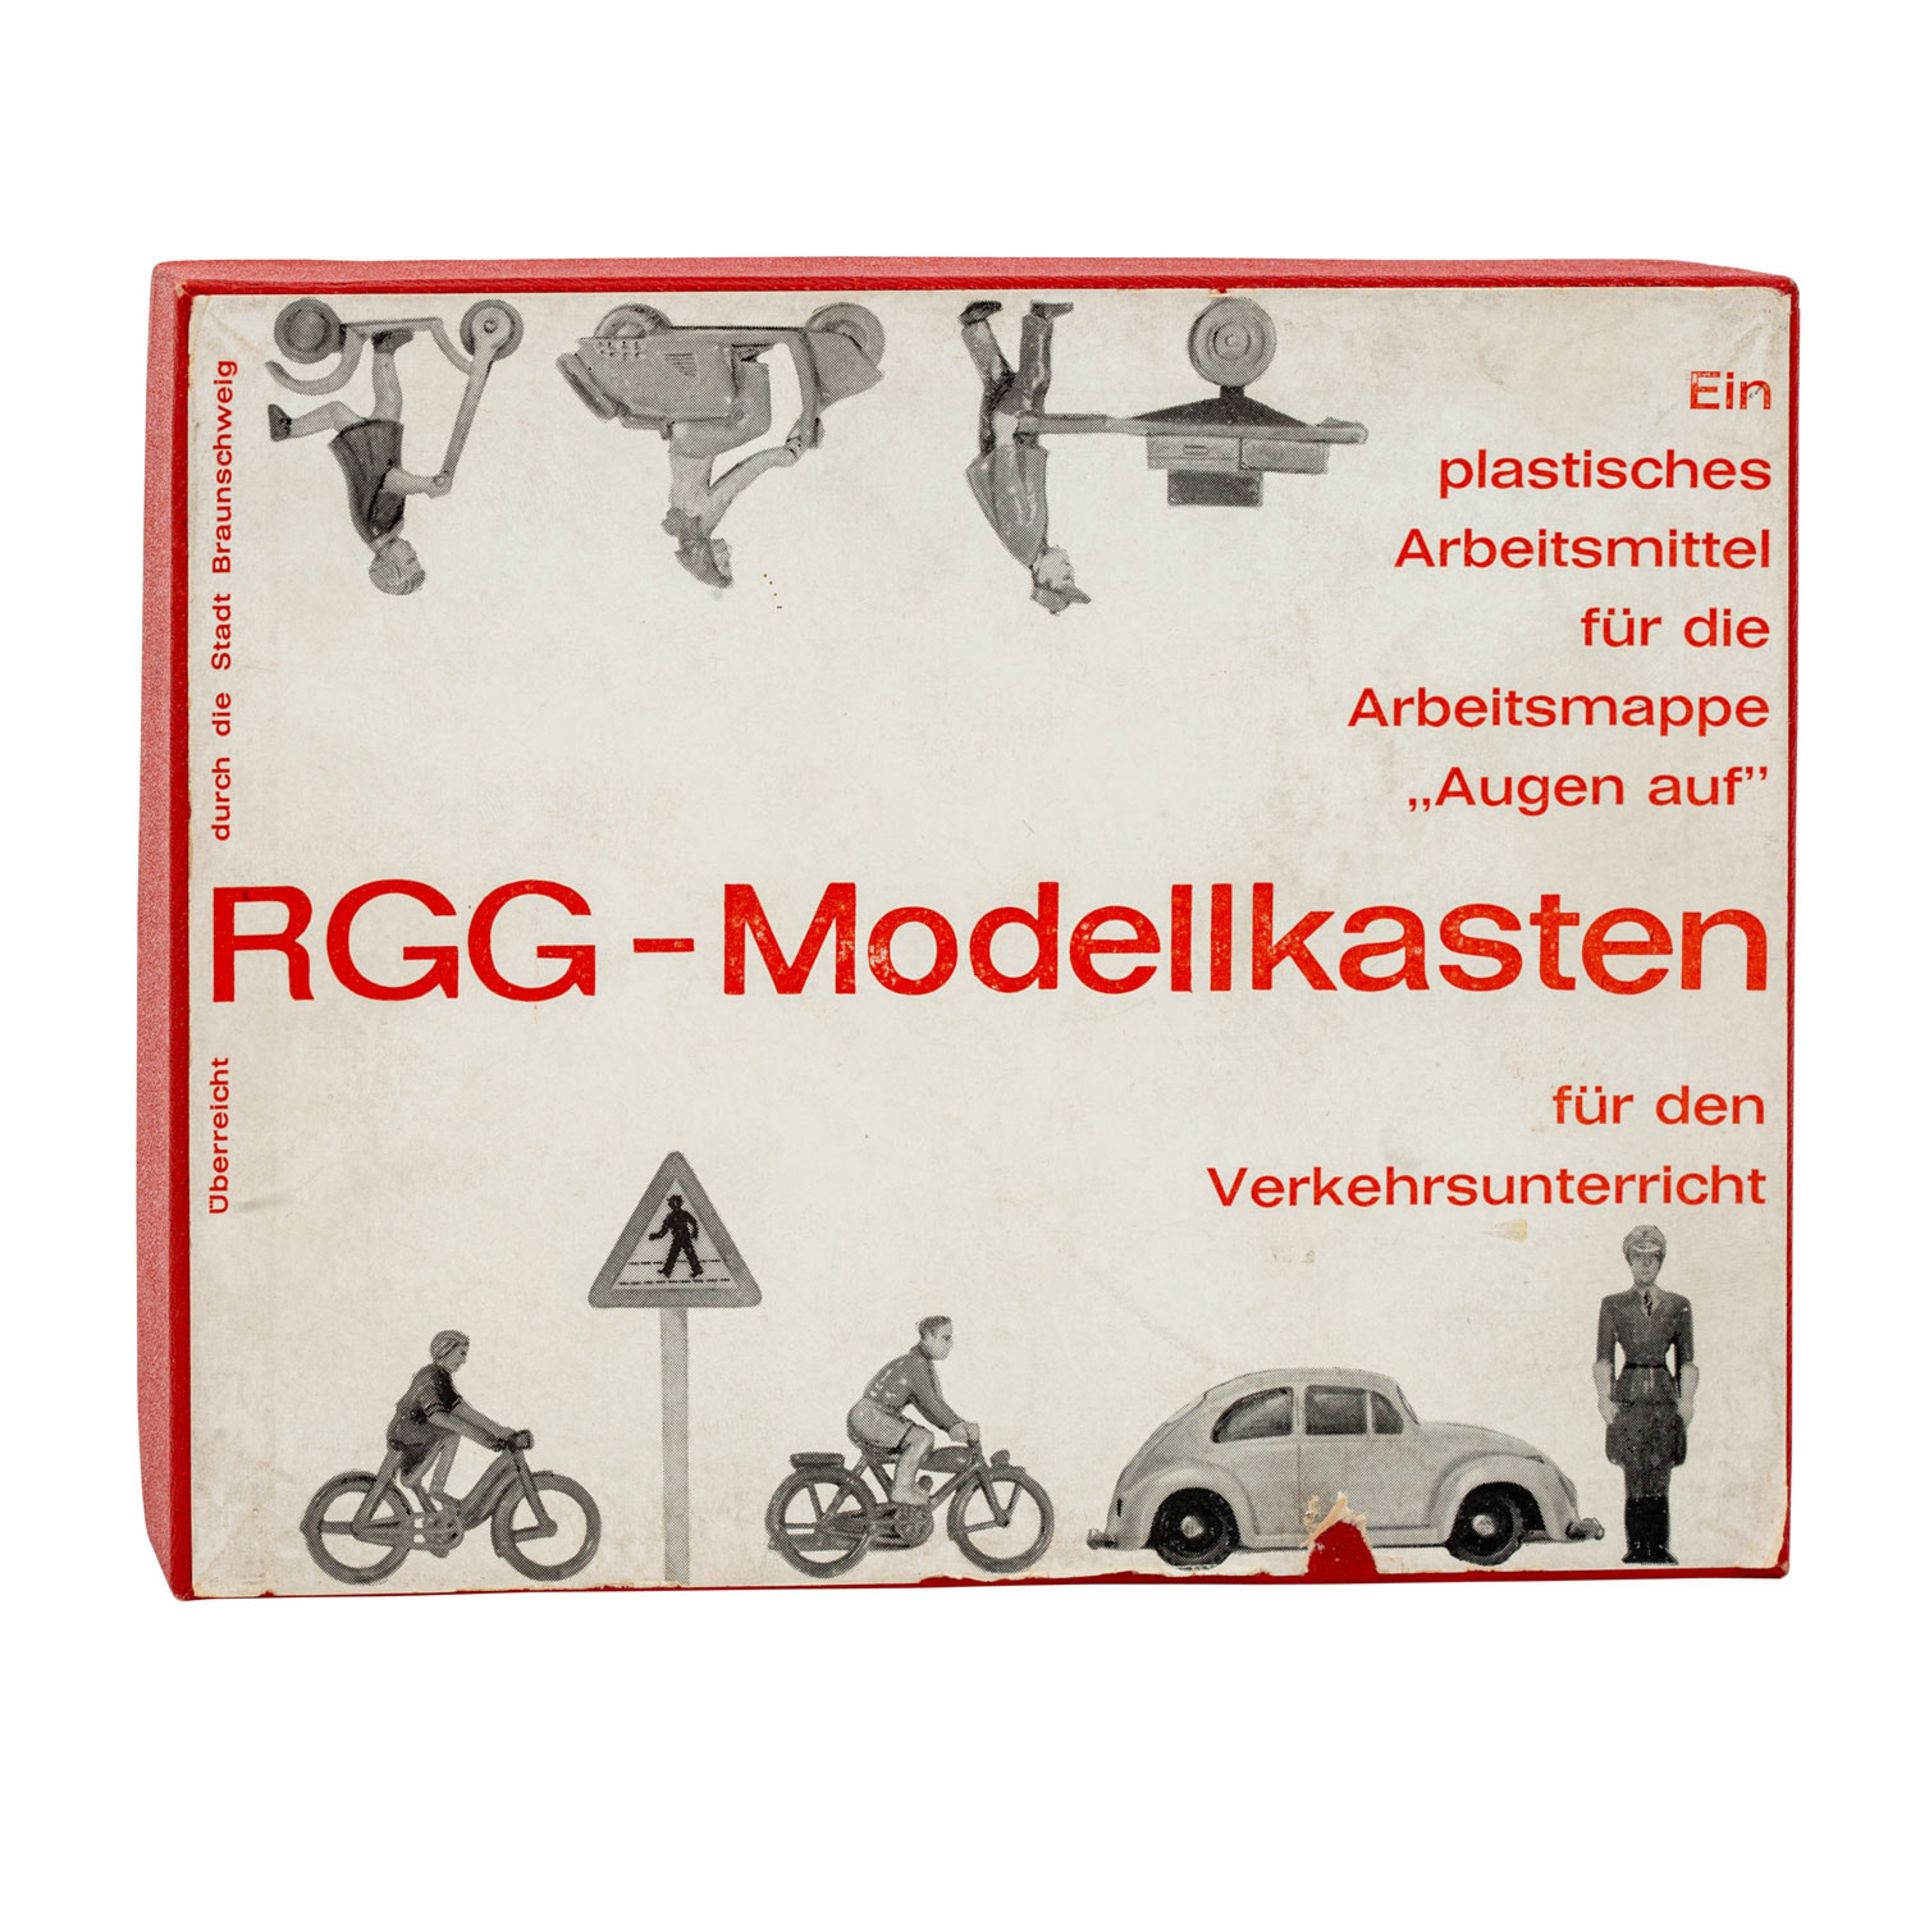 WIKING RGG- Modellkasten für den Verkehrsunterricht, - Image 3 of 3